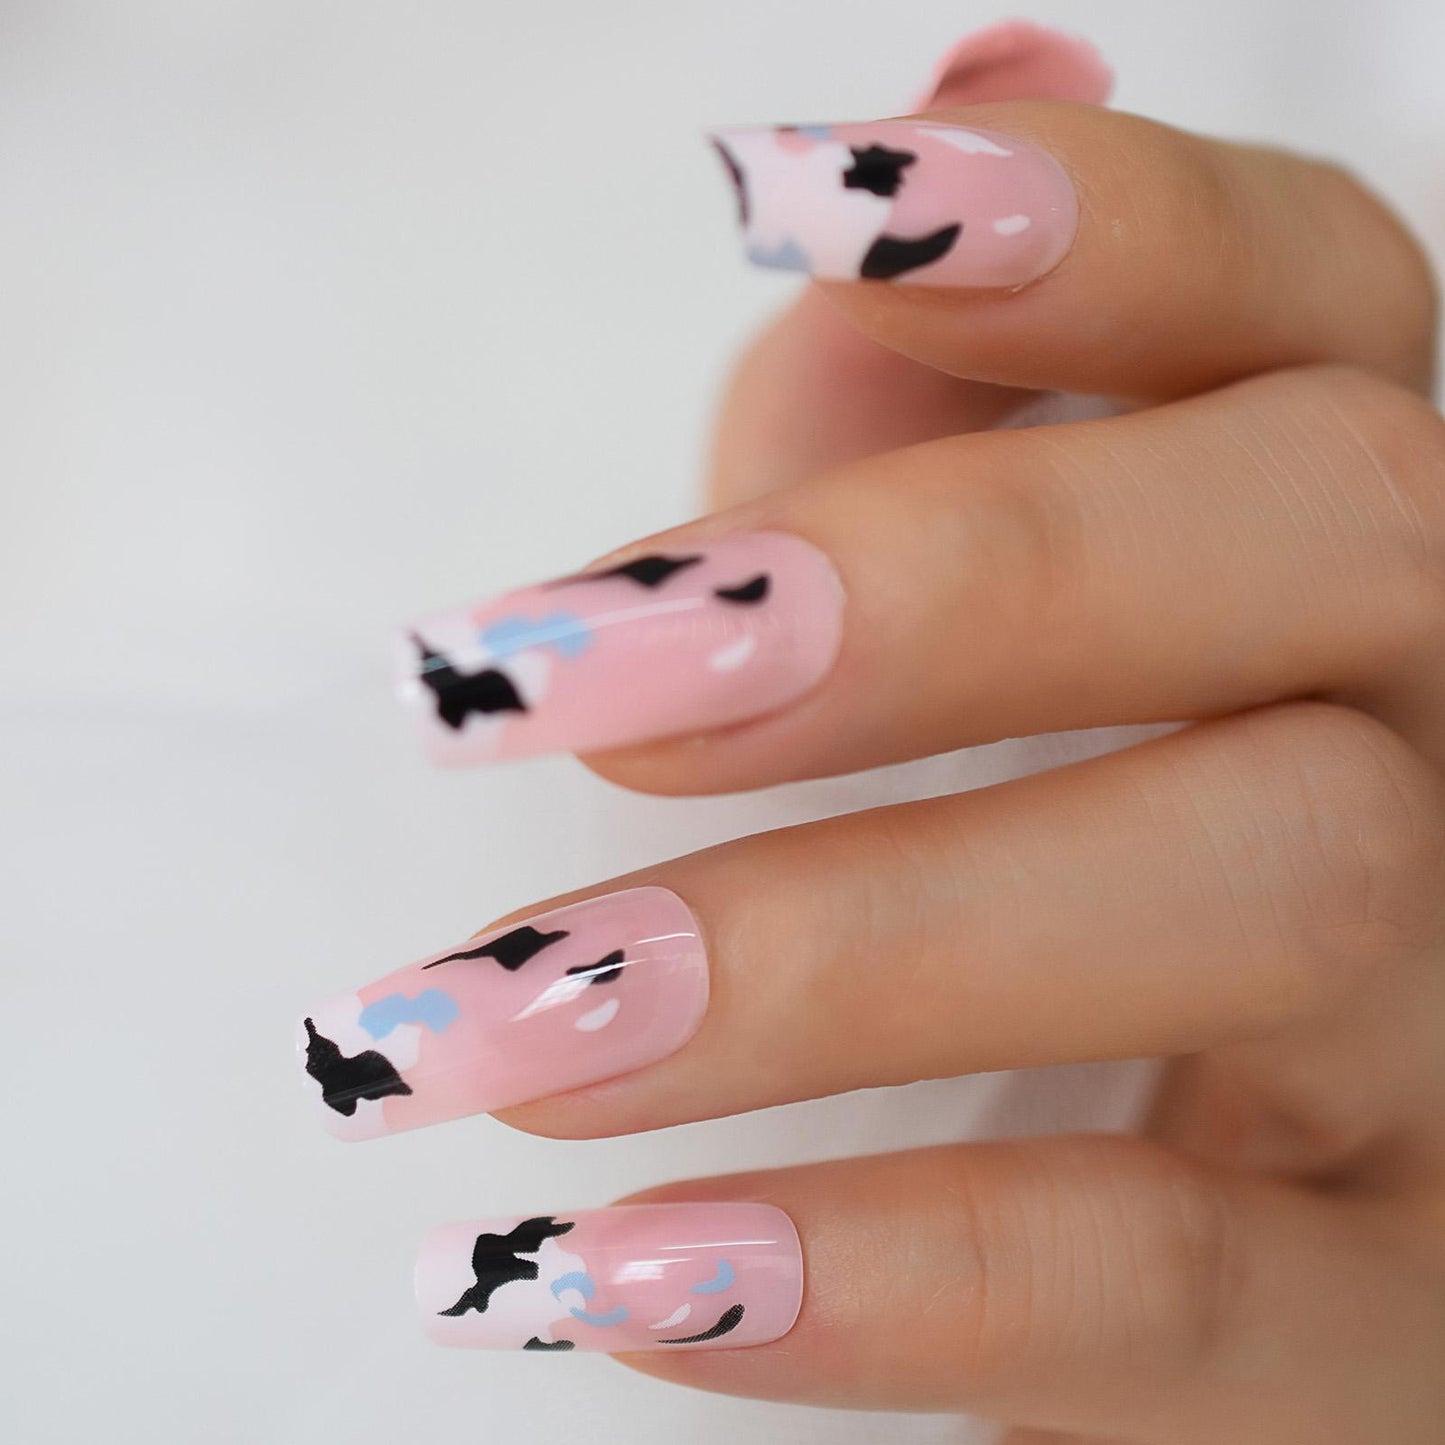 Glossy Pink Nails